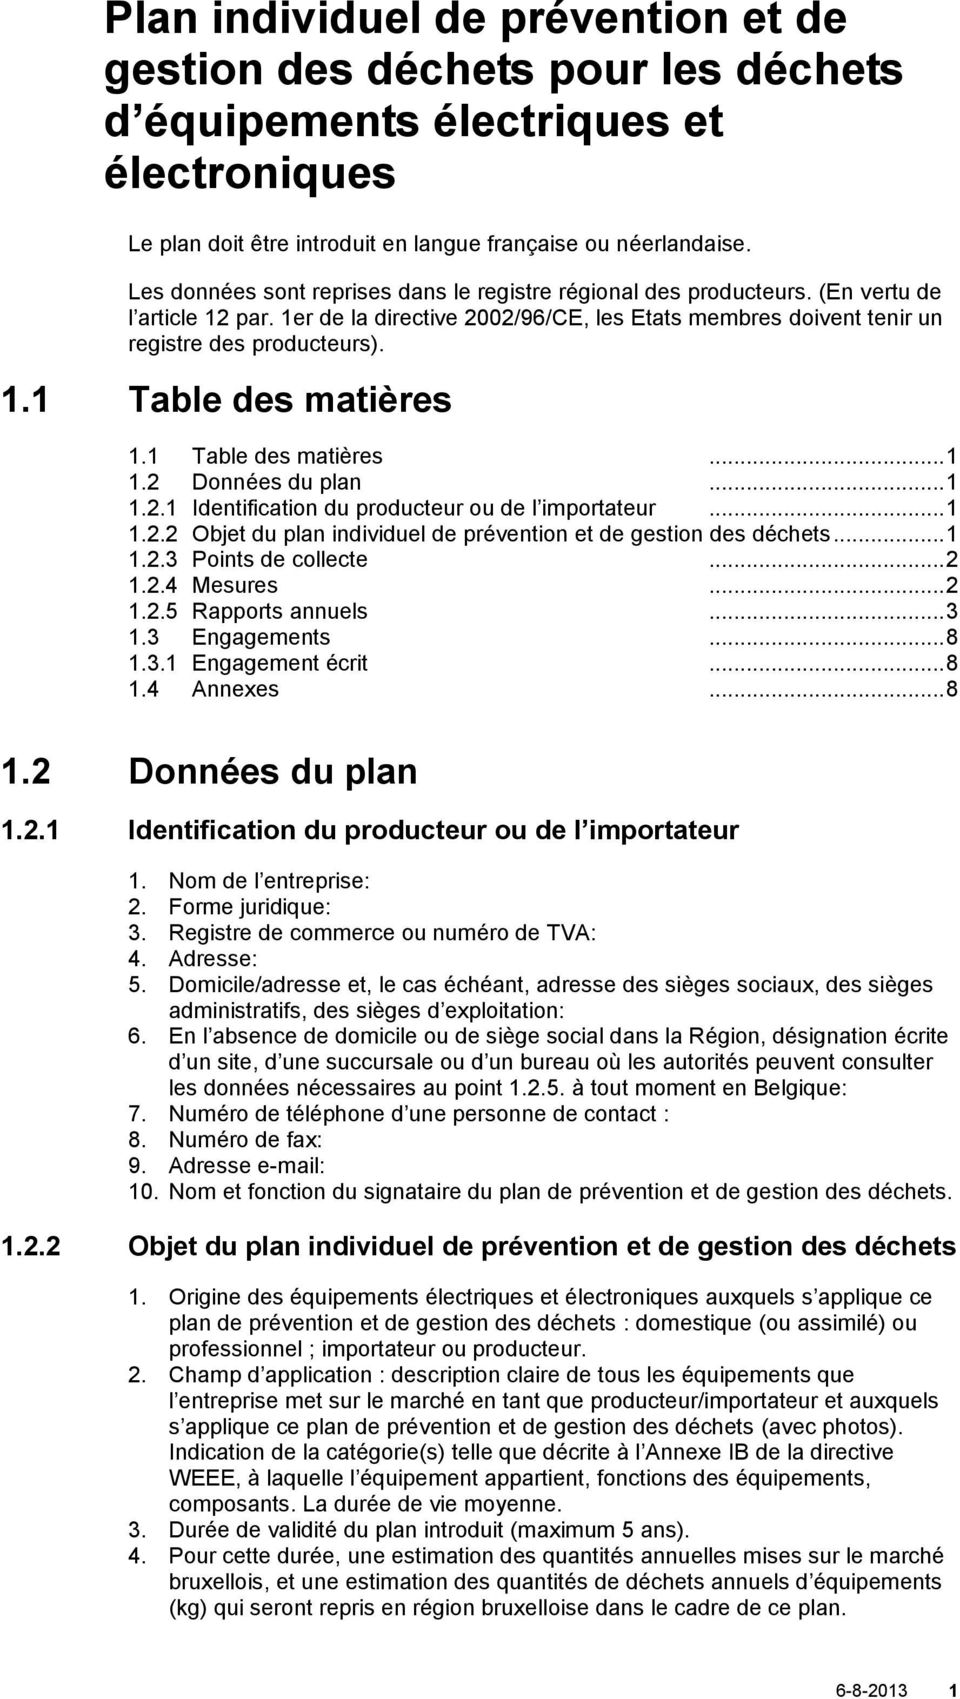 1 Table des matières... 1 1.2 Données du plan... 1 1.2.1 Identification du producteur ou de l importateur... 1 1.2.2 Objet du plan individuel de prévention et de gestion des déchets... 1 1.2.3 Points de collecte.